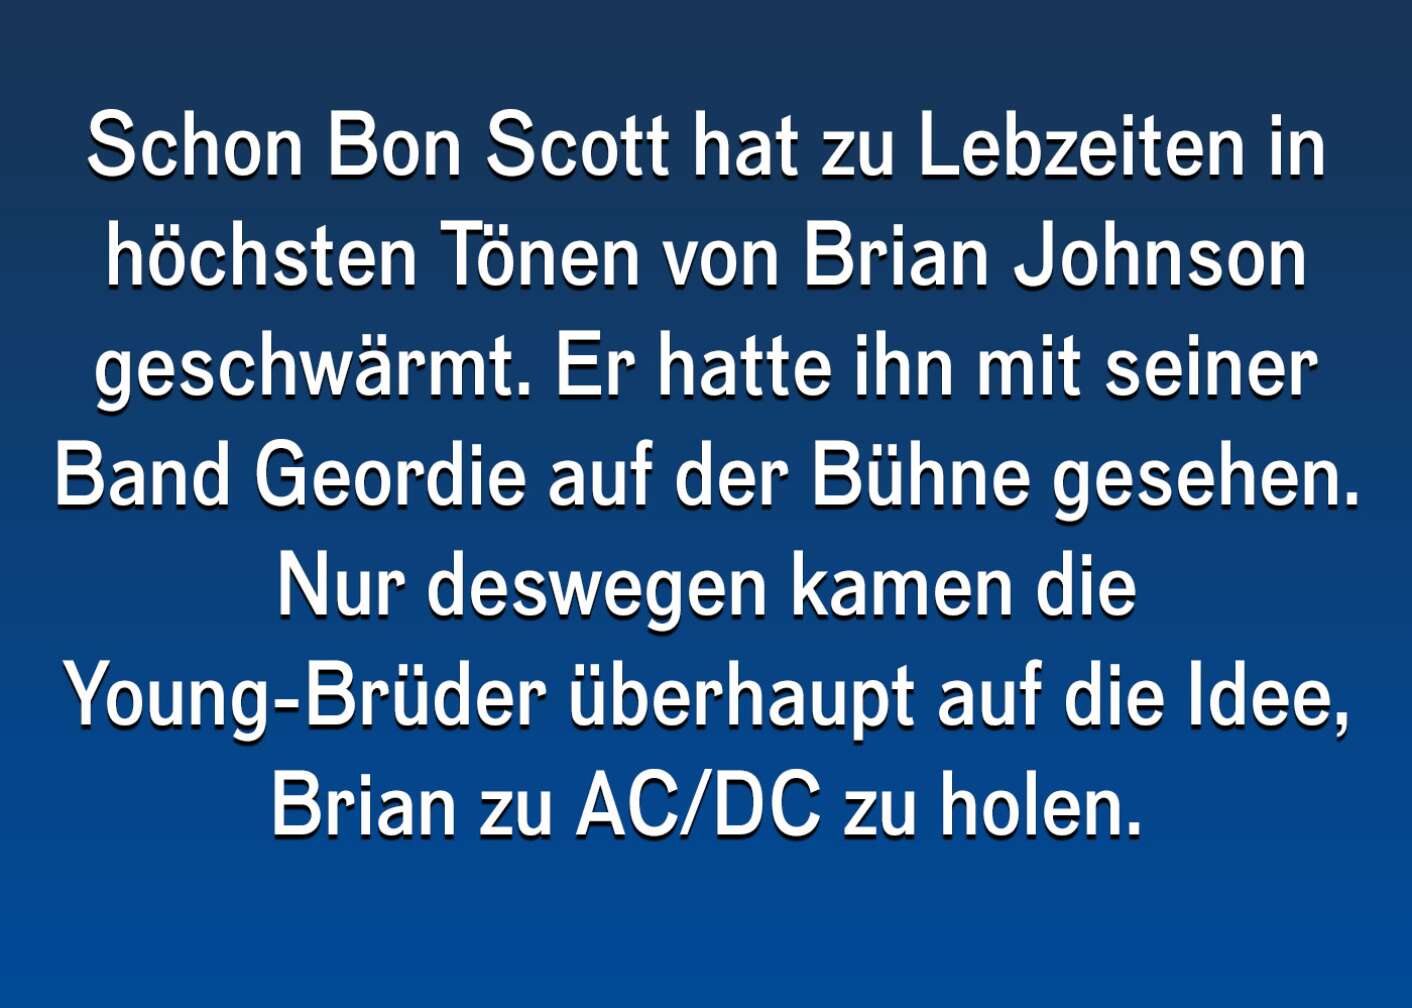 Fakt über Brian Johnson